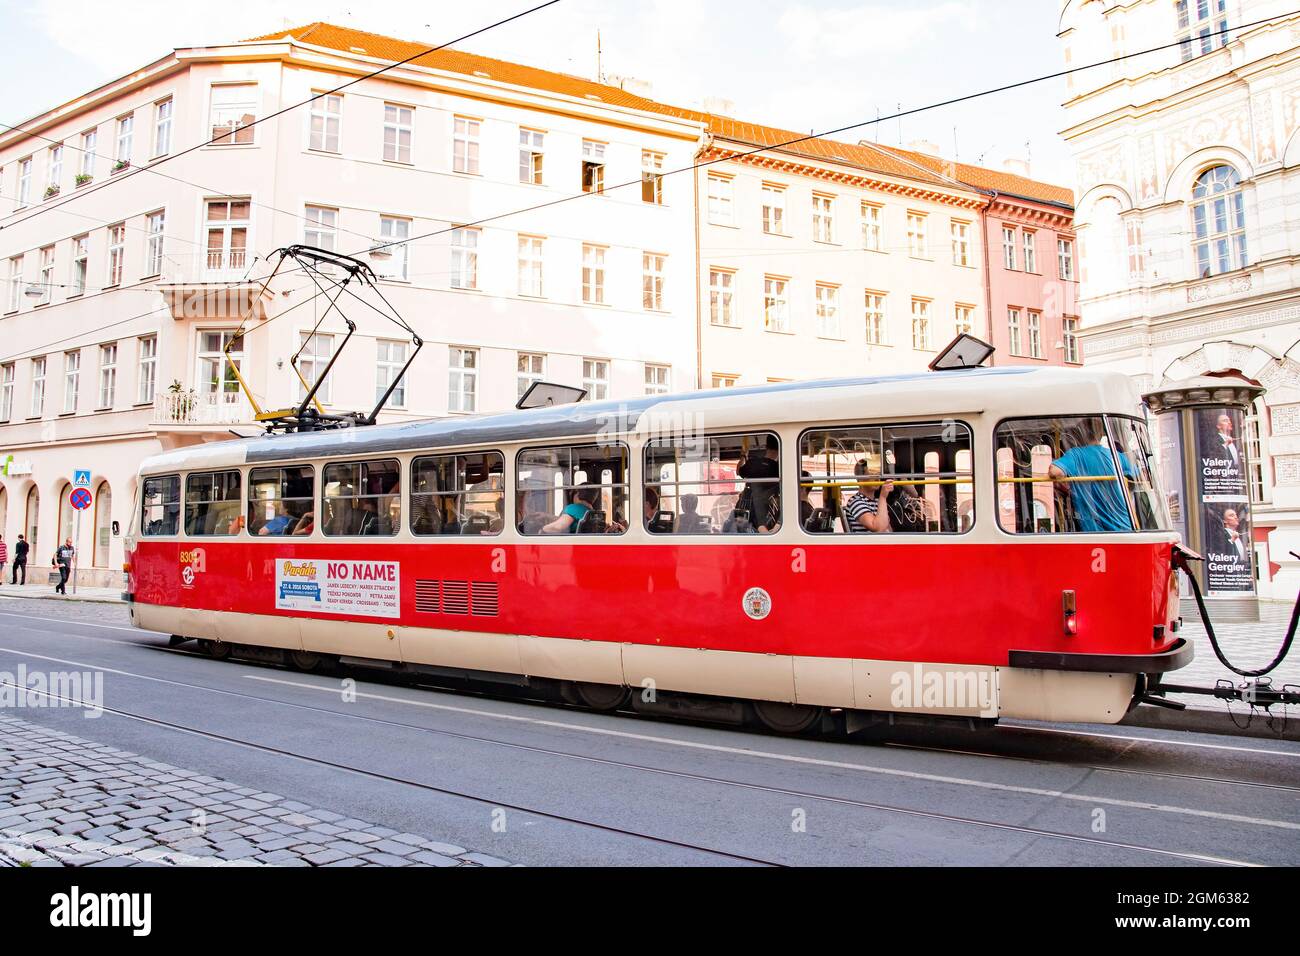 Le réseau de tramways de Prague couvre tous les quartiers du centre-ville et s'étend sur une certaine distance jusqu'à la banlieue. Pris à Prague, le 22 juillet 2016 Banque D'Images